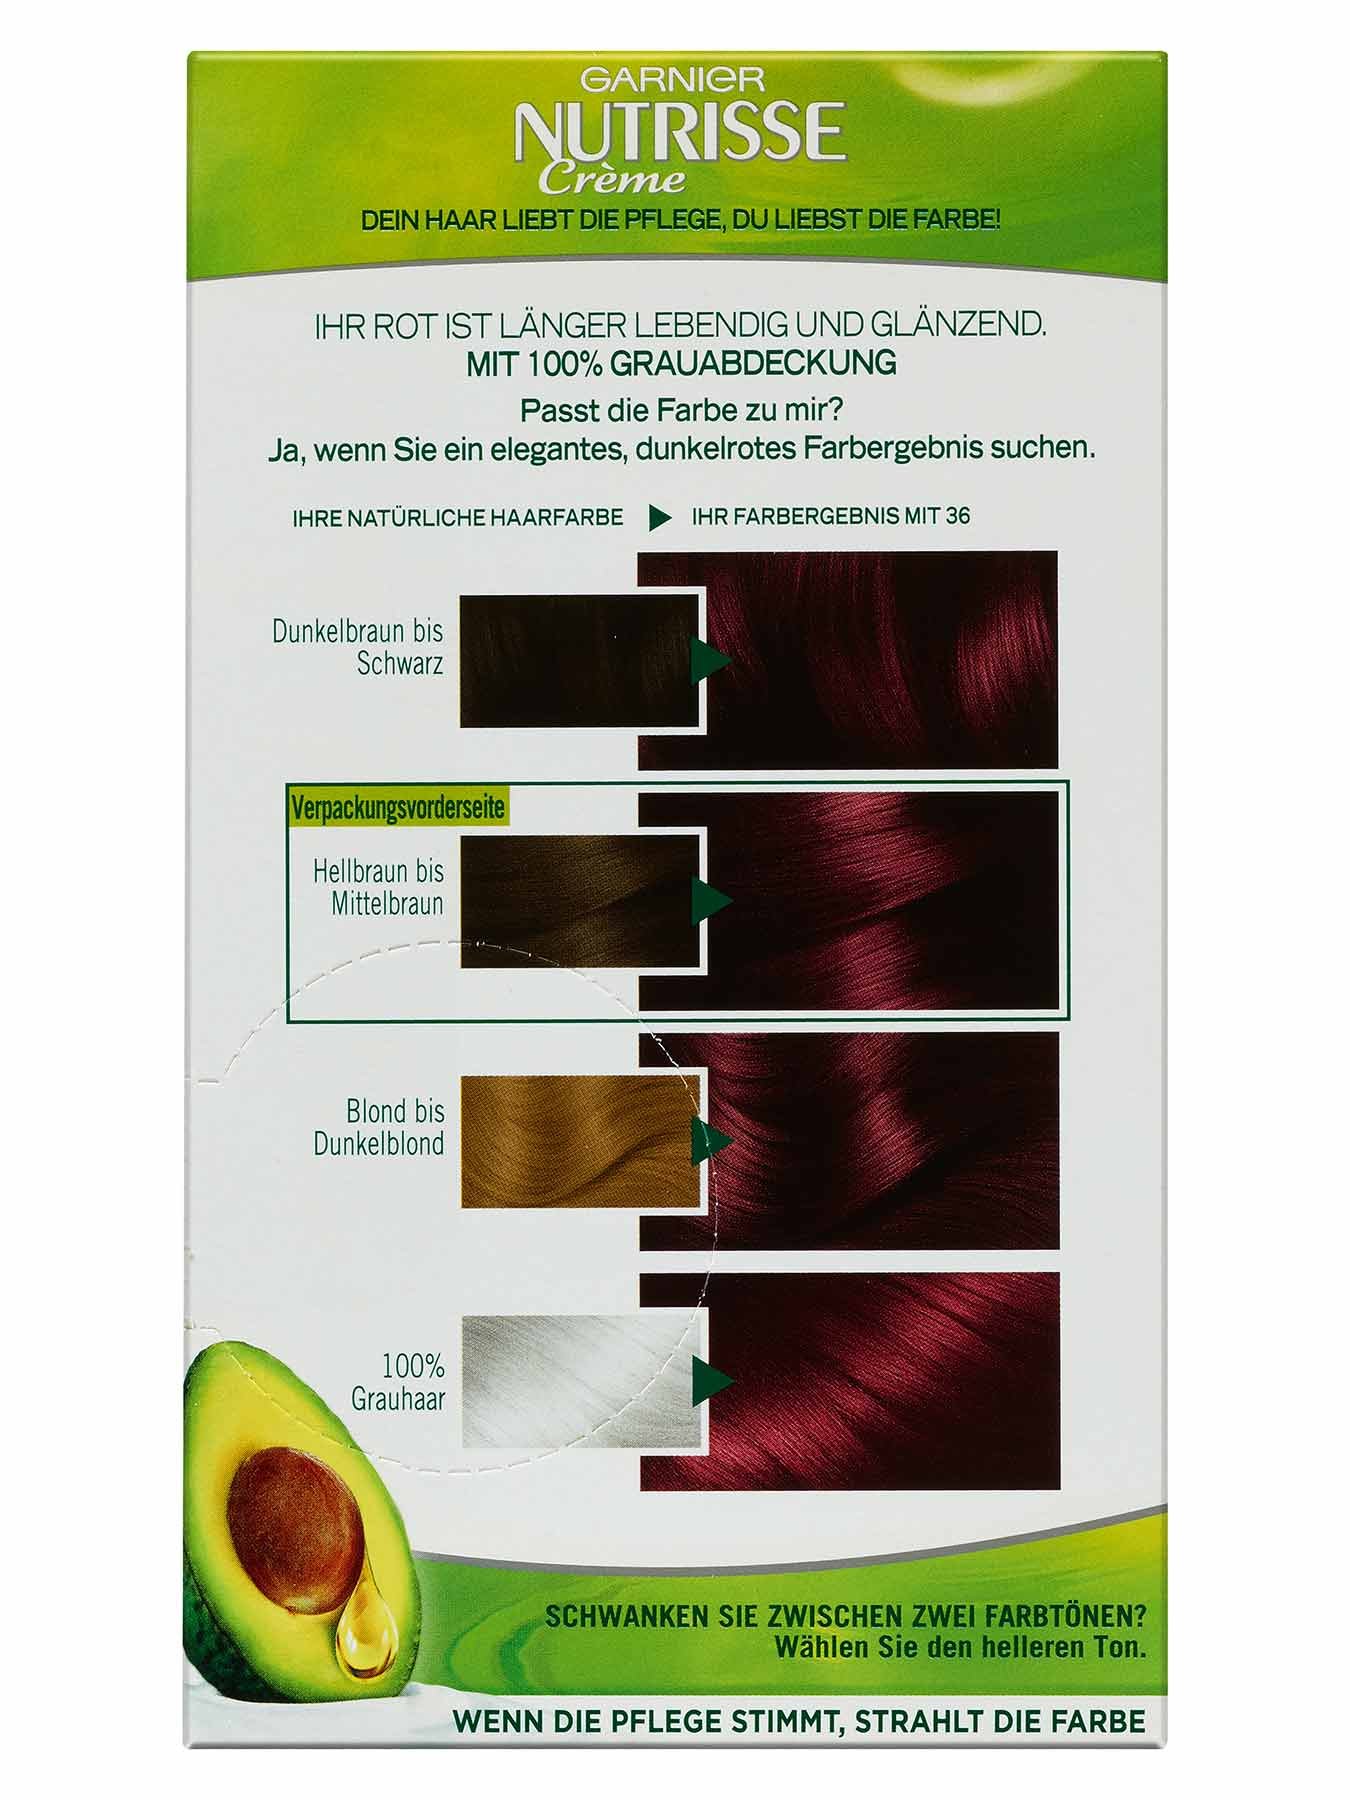 36 Dunkle Kirsche Dauerhafte Pflege Haarfarbe Nutrisse Creme 1Stk Rueckseite Garnier DE gr